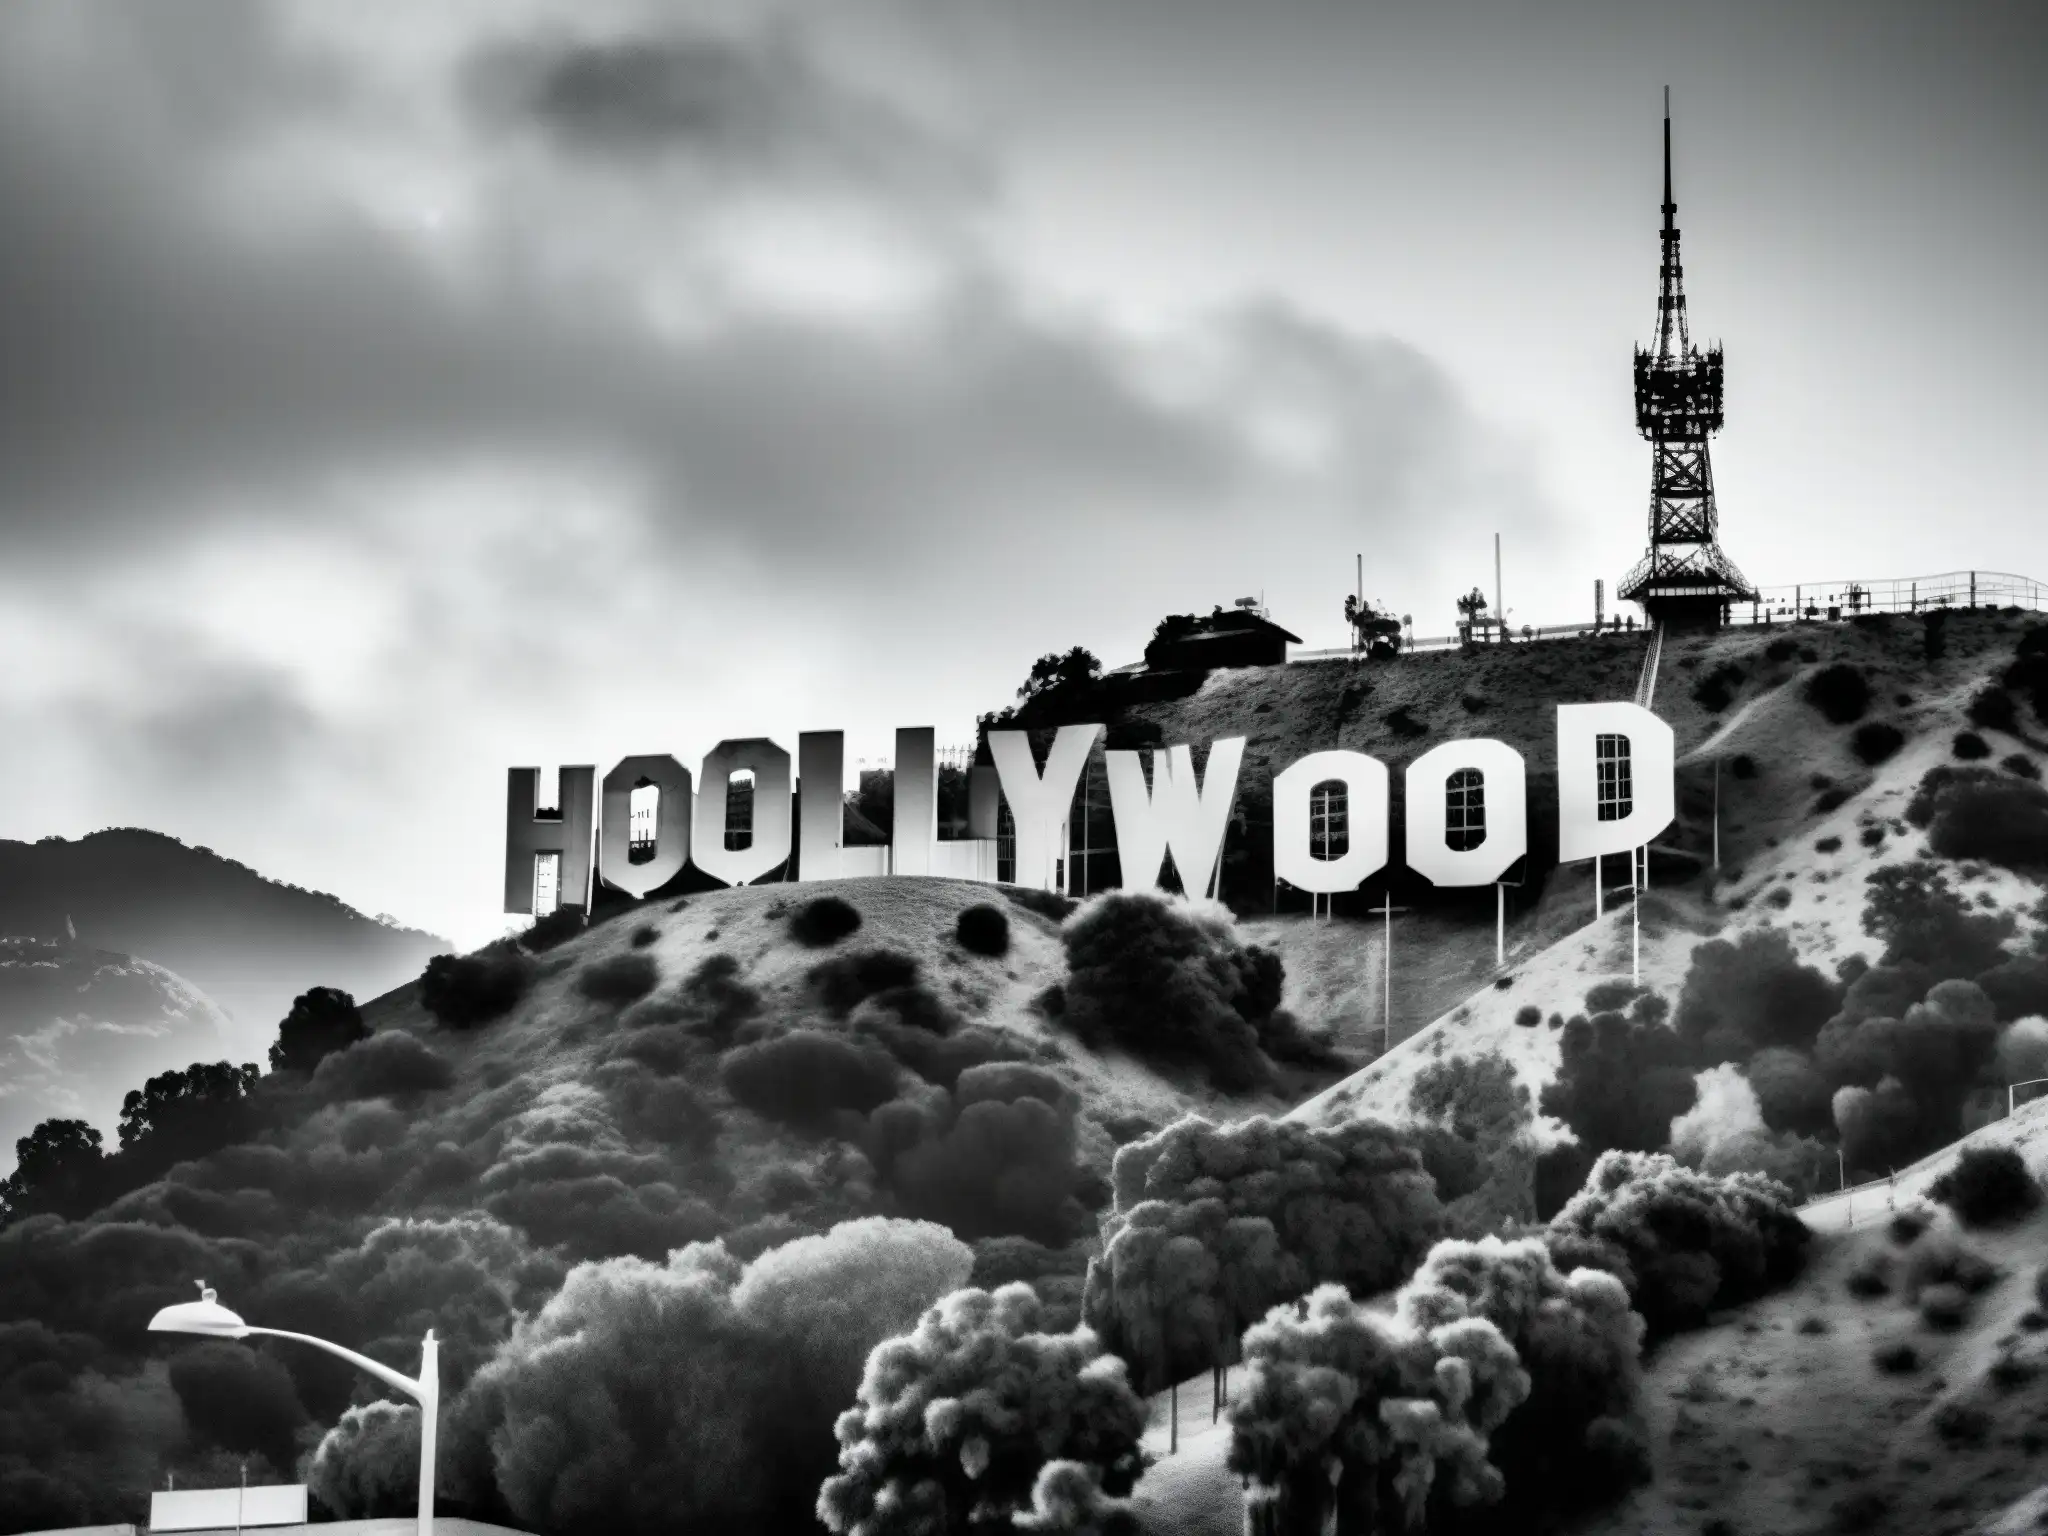 Una imponente imagen en blanco y negro del icónico letrero de Hollywood, evocando misterio y leyendas urbanas detrás de su fama